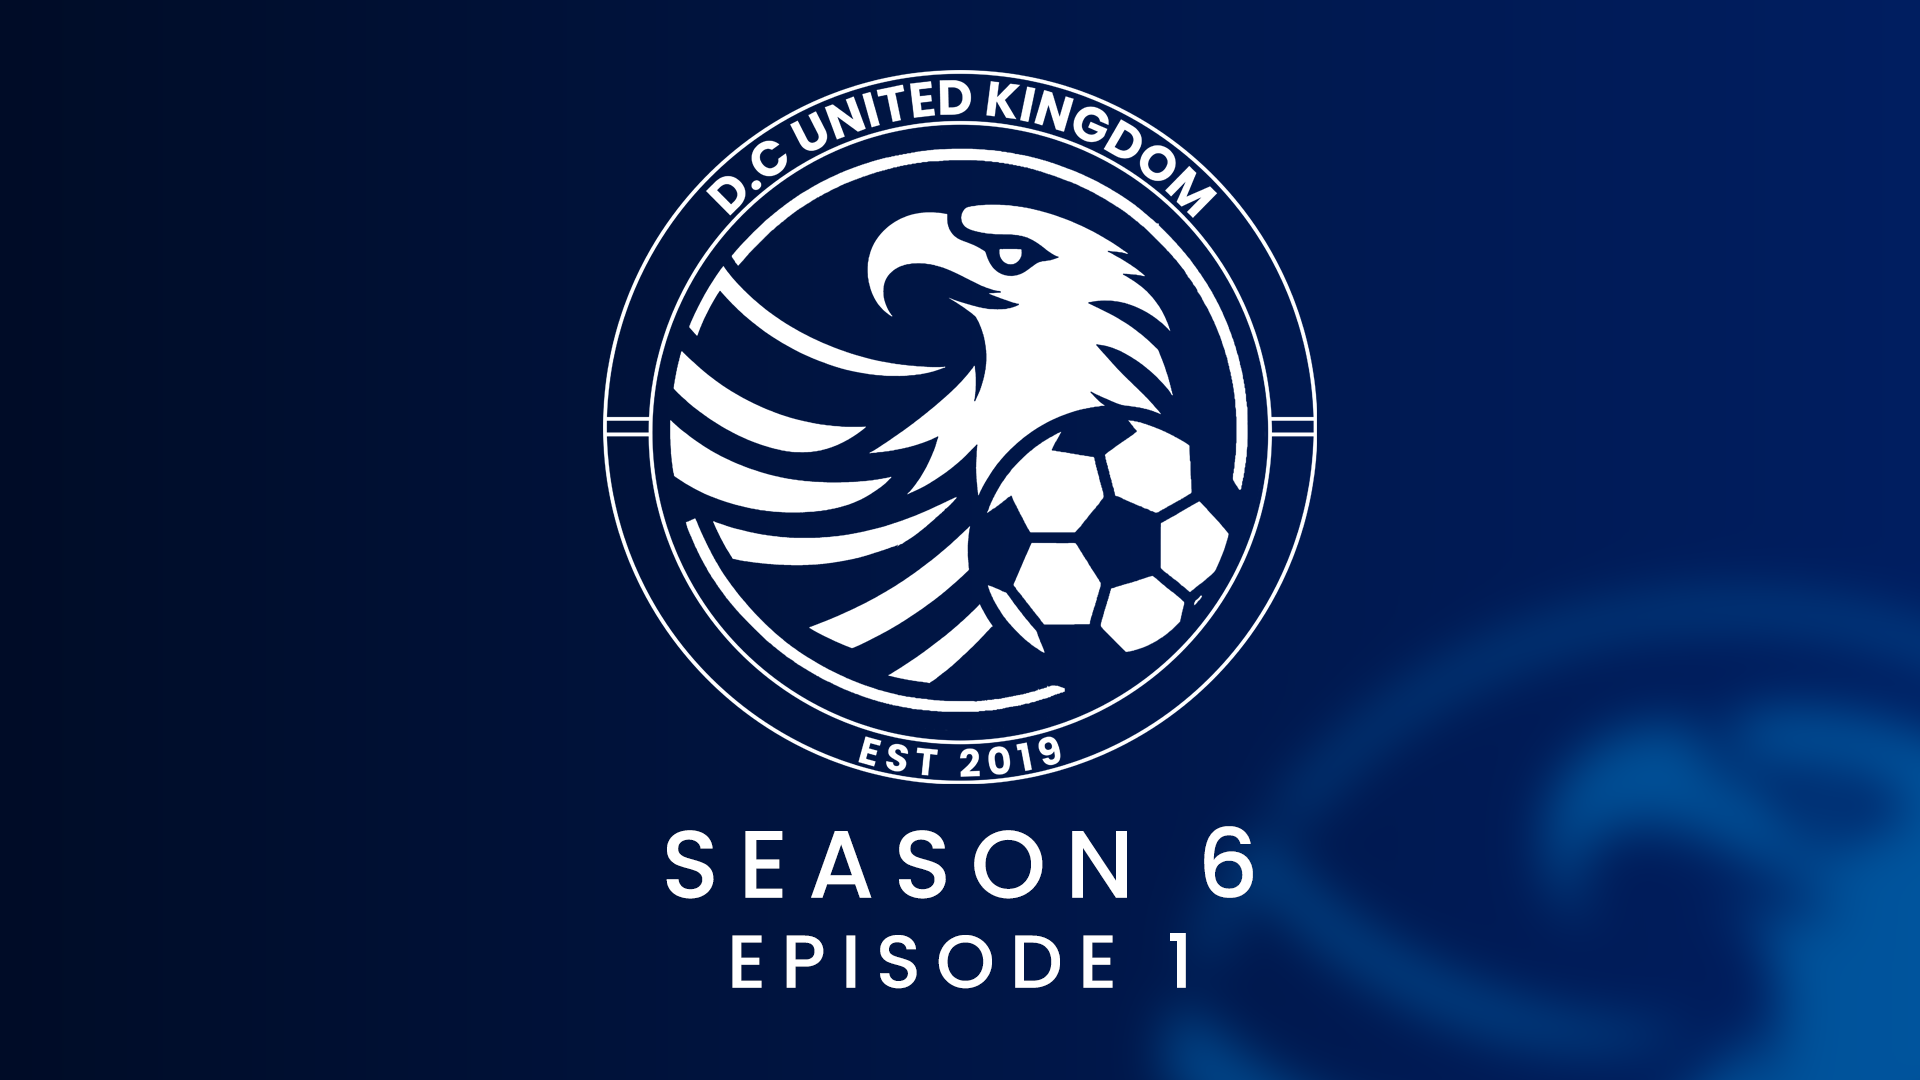 Podcast: Season 6 is underway